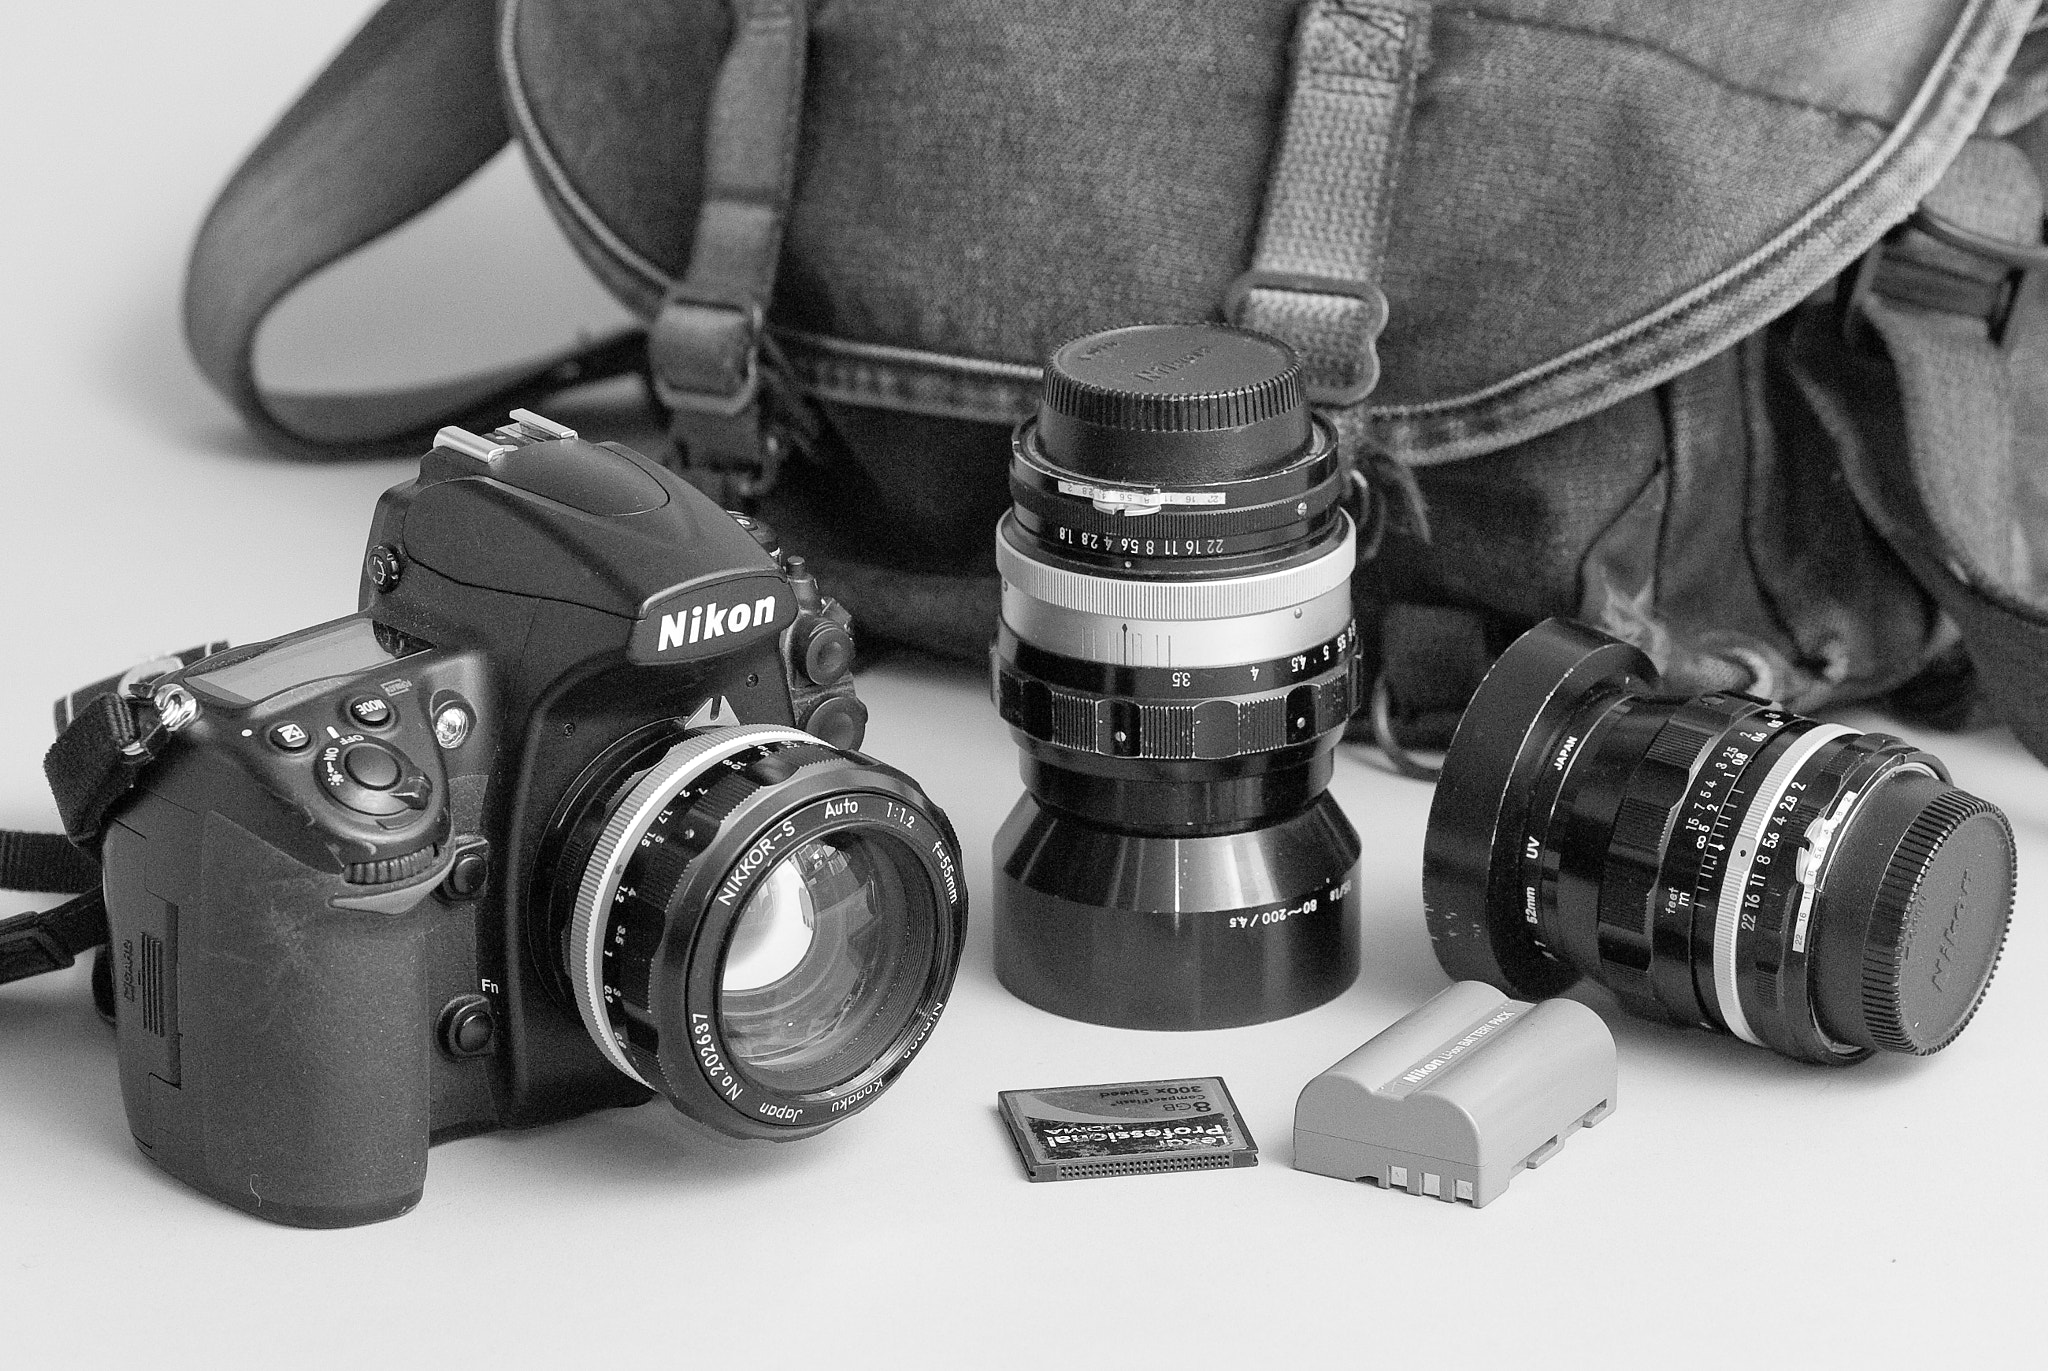 Nikon D200 + AF Nikkor 85mm f/1.8 sample photo. Camera bag photography